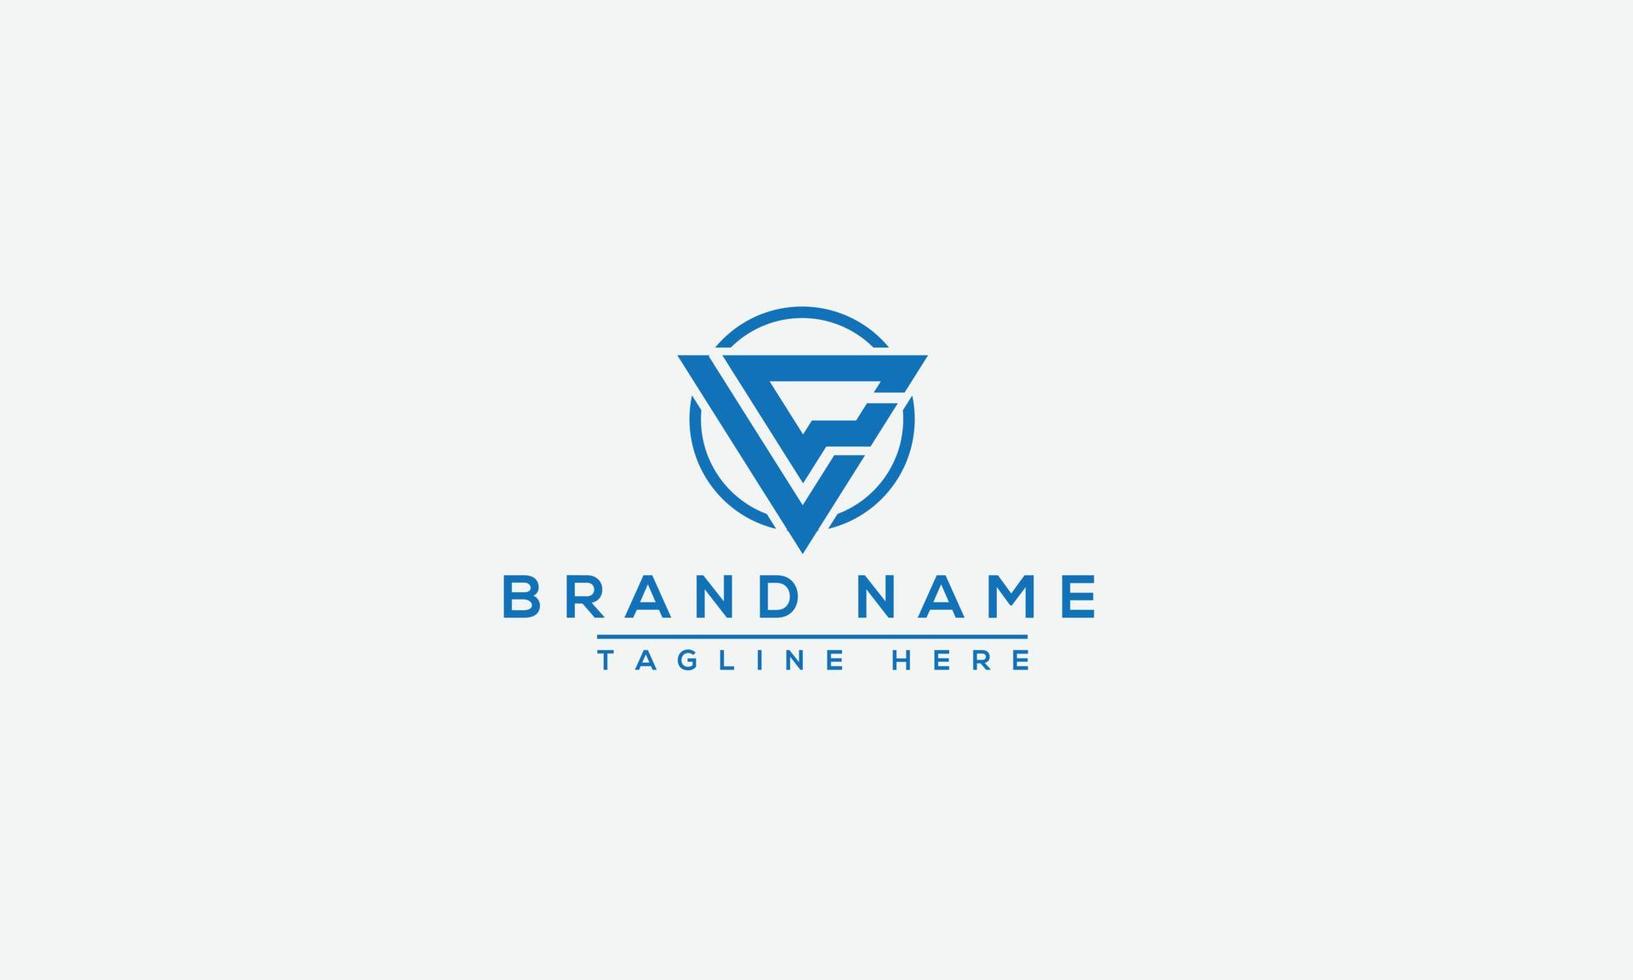 lc modelo de design de logotipo vector elemento de branding gráfico.